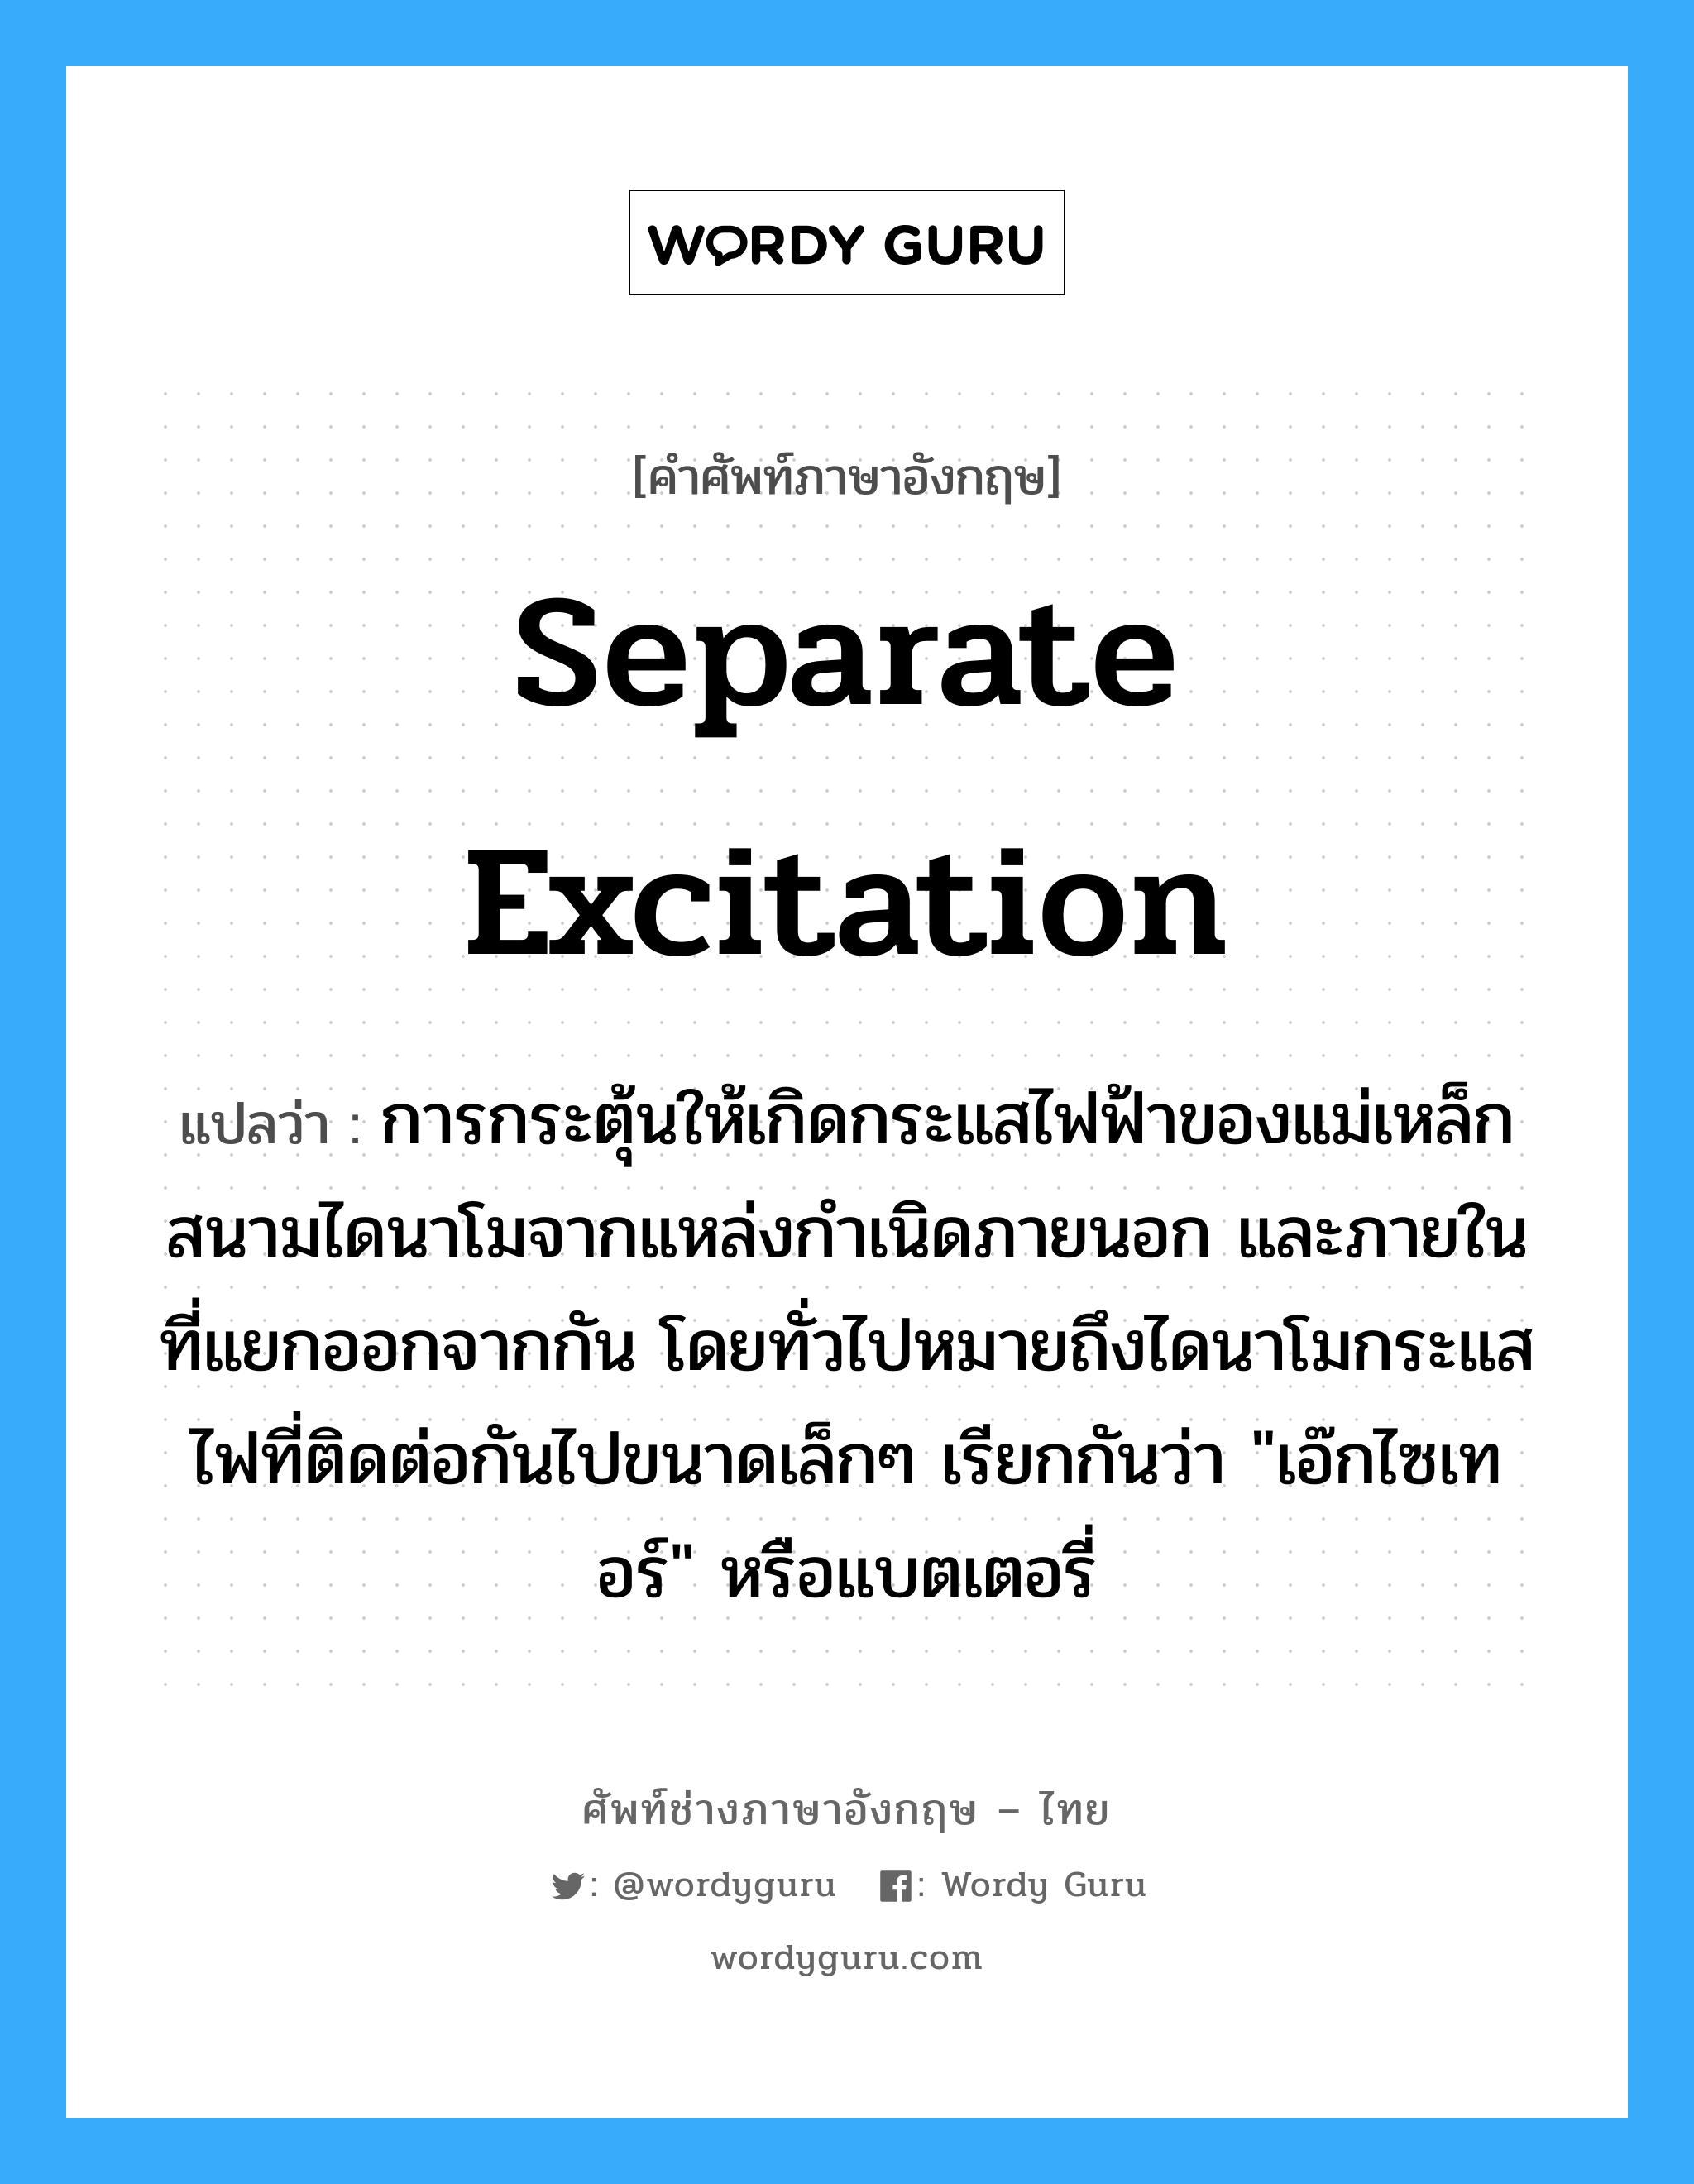 separate excitation แปลว่า?, คำศัพท์ช่างภาษาอังกฤษ - ไทย separate excitation คำศัพท์ภาษาอังกฤษ separate excitation แปลว่า การกระตุ้นให้เกิดกระแสไฟฟ้าของแม่เหล็กสนามไดนาโมจากแหล่งกำเนิดภายนอก และภายในที่แยกออกจากกัน โดยทั่วไปหมายถึงไดนาโมกระแสไฟที่ติดต่อกันไปขนาดเล็กๆ เรียกกันว่า "เอ๊กไซเทอร์" หรือแบตเตอรี่